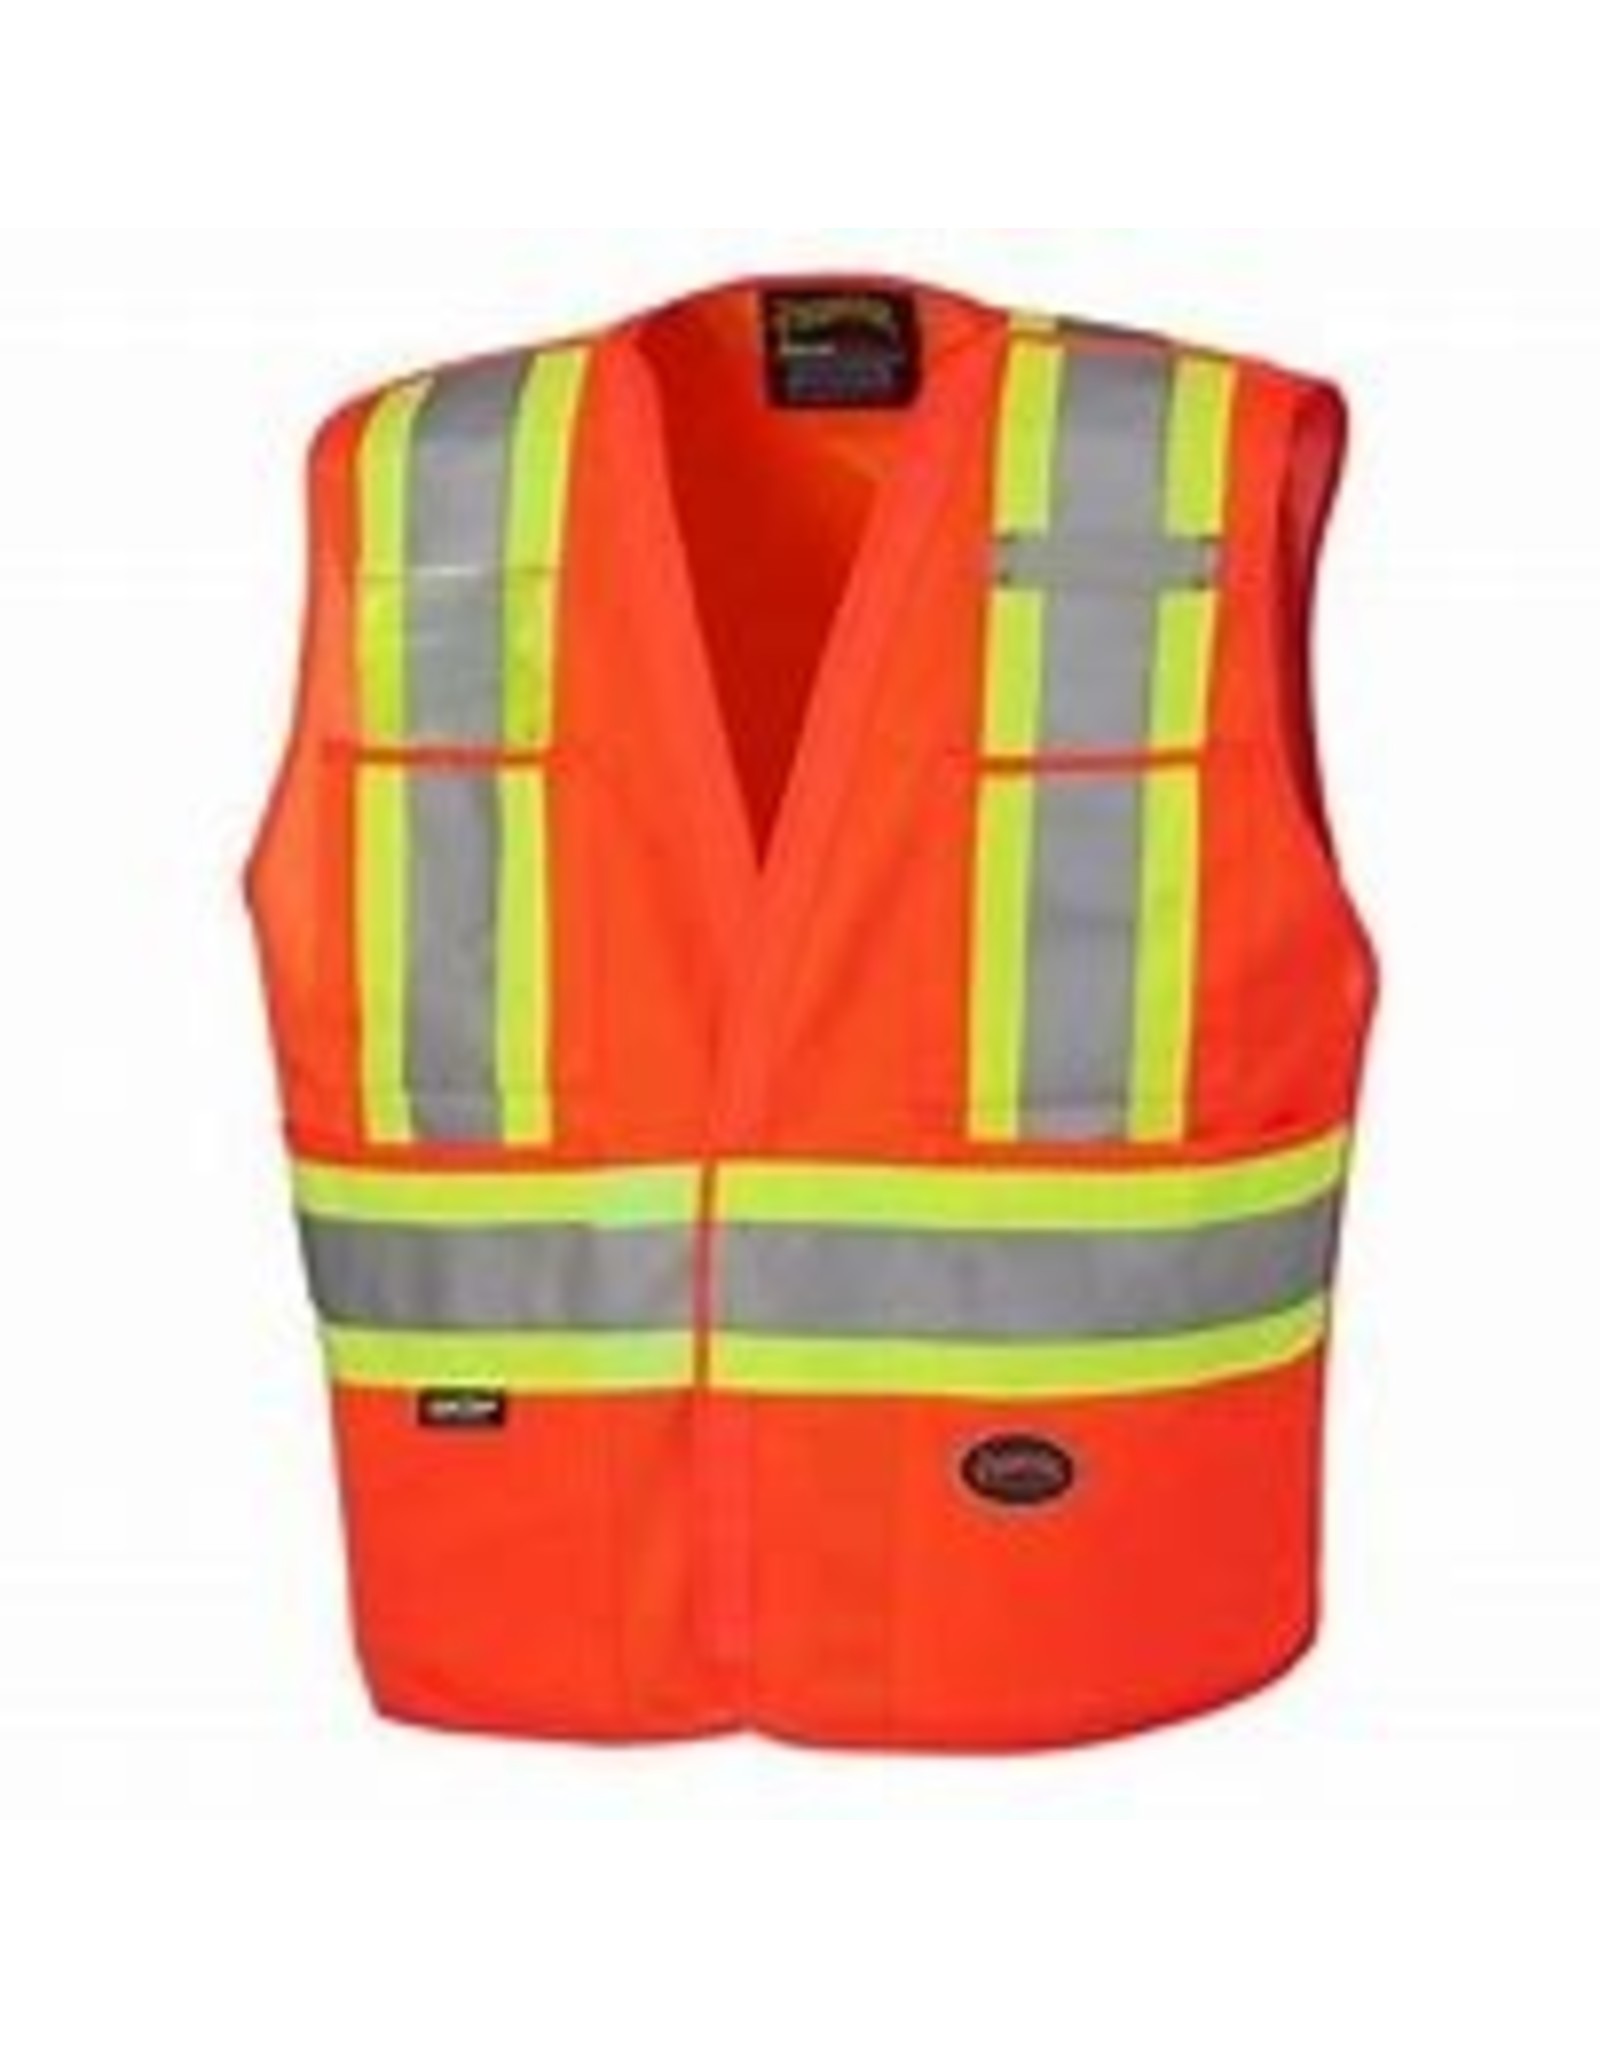 Tricot Ploly Interlock Mesh back Safety Vest